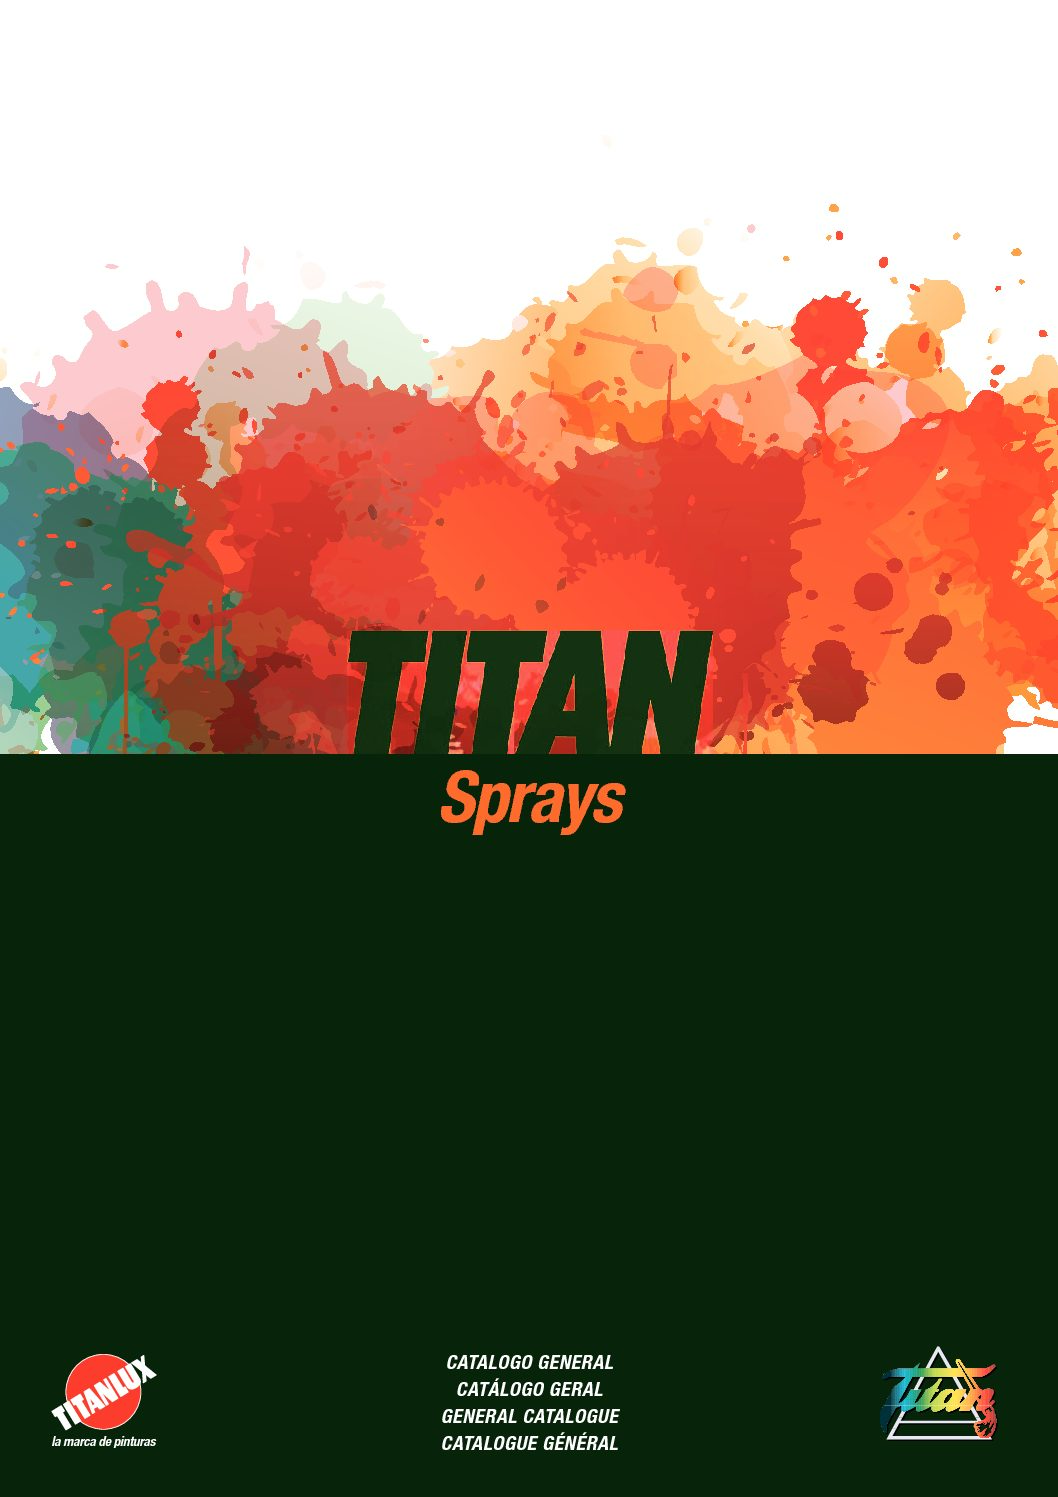 Titan - Sprays